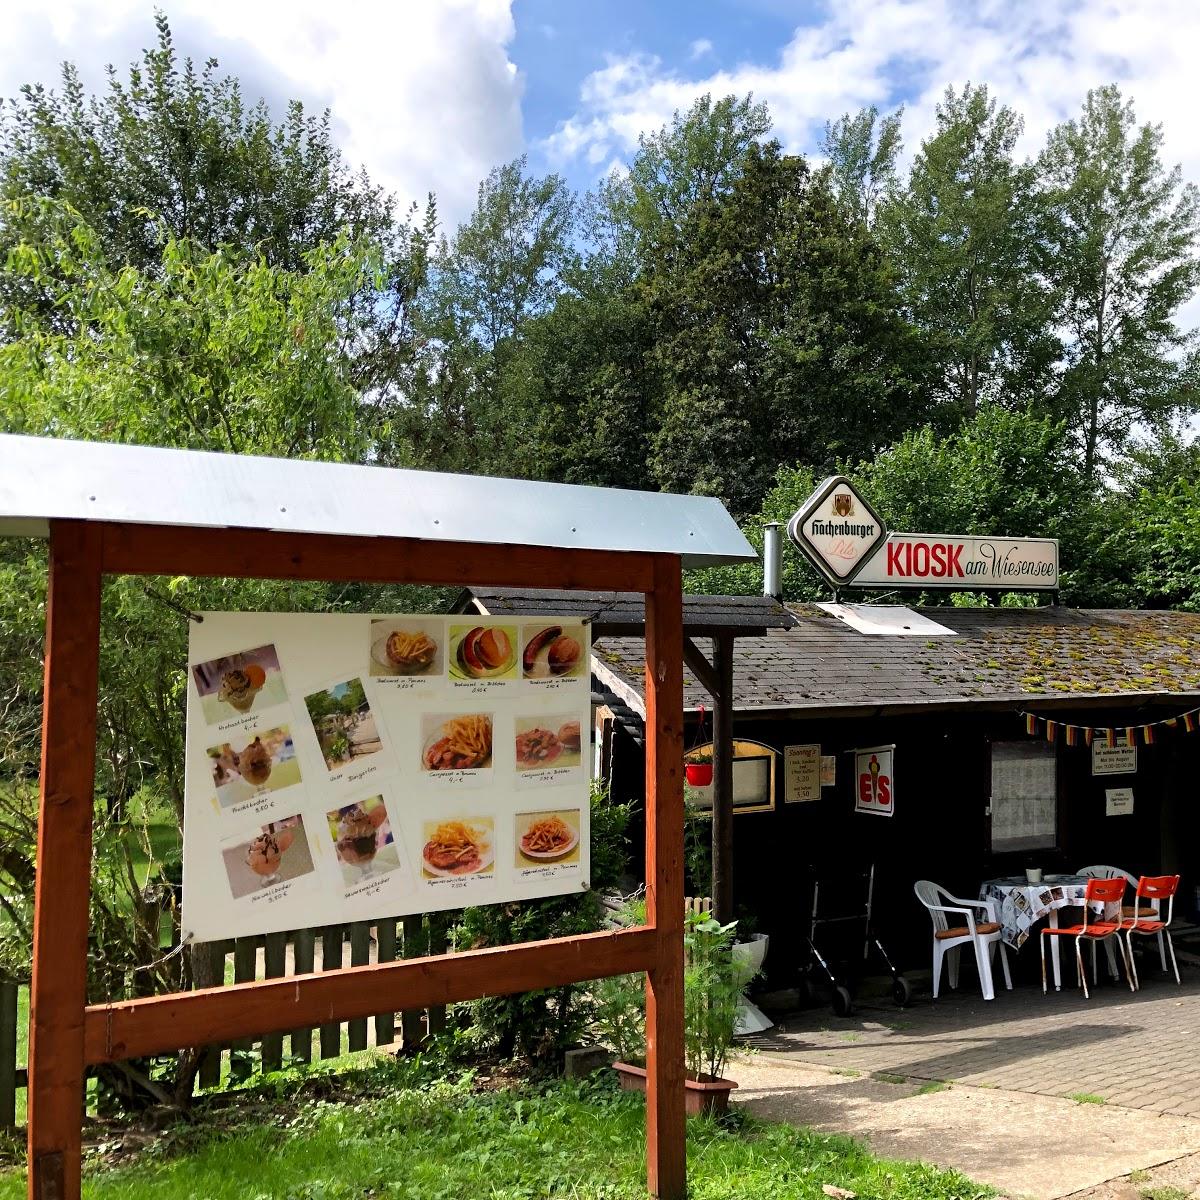 Restaurant "Kiosk am Wiesensee" in Pottum